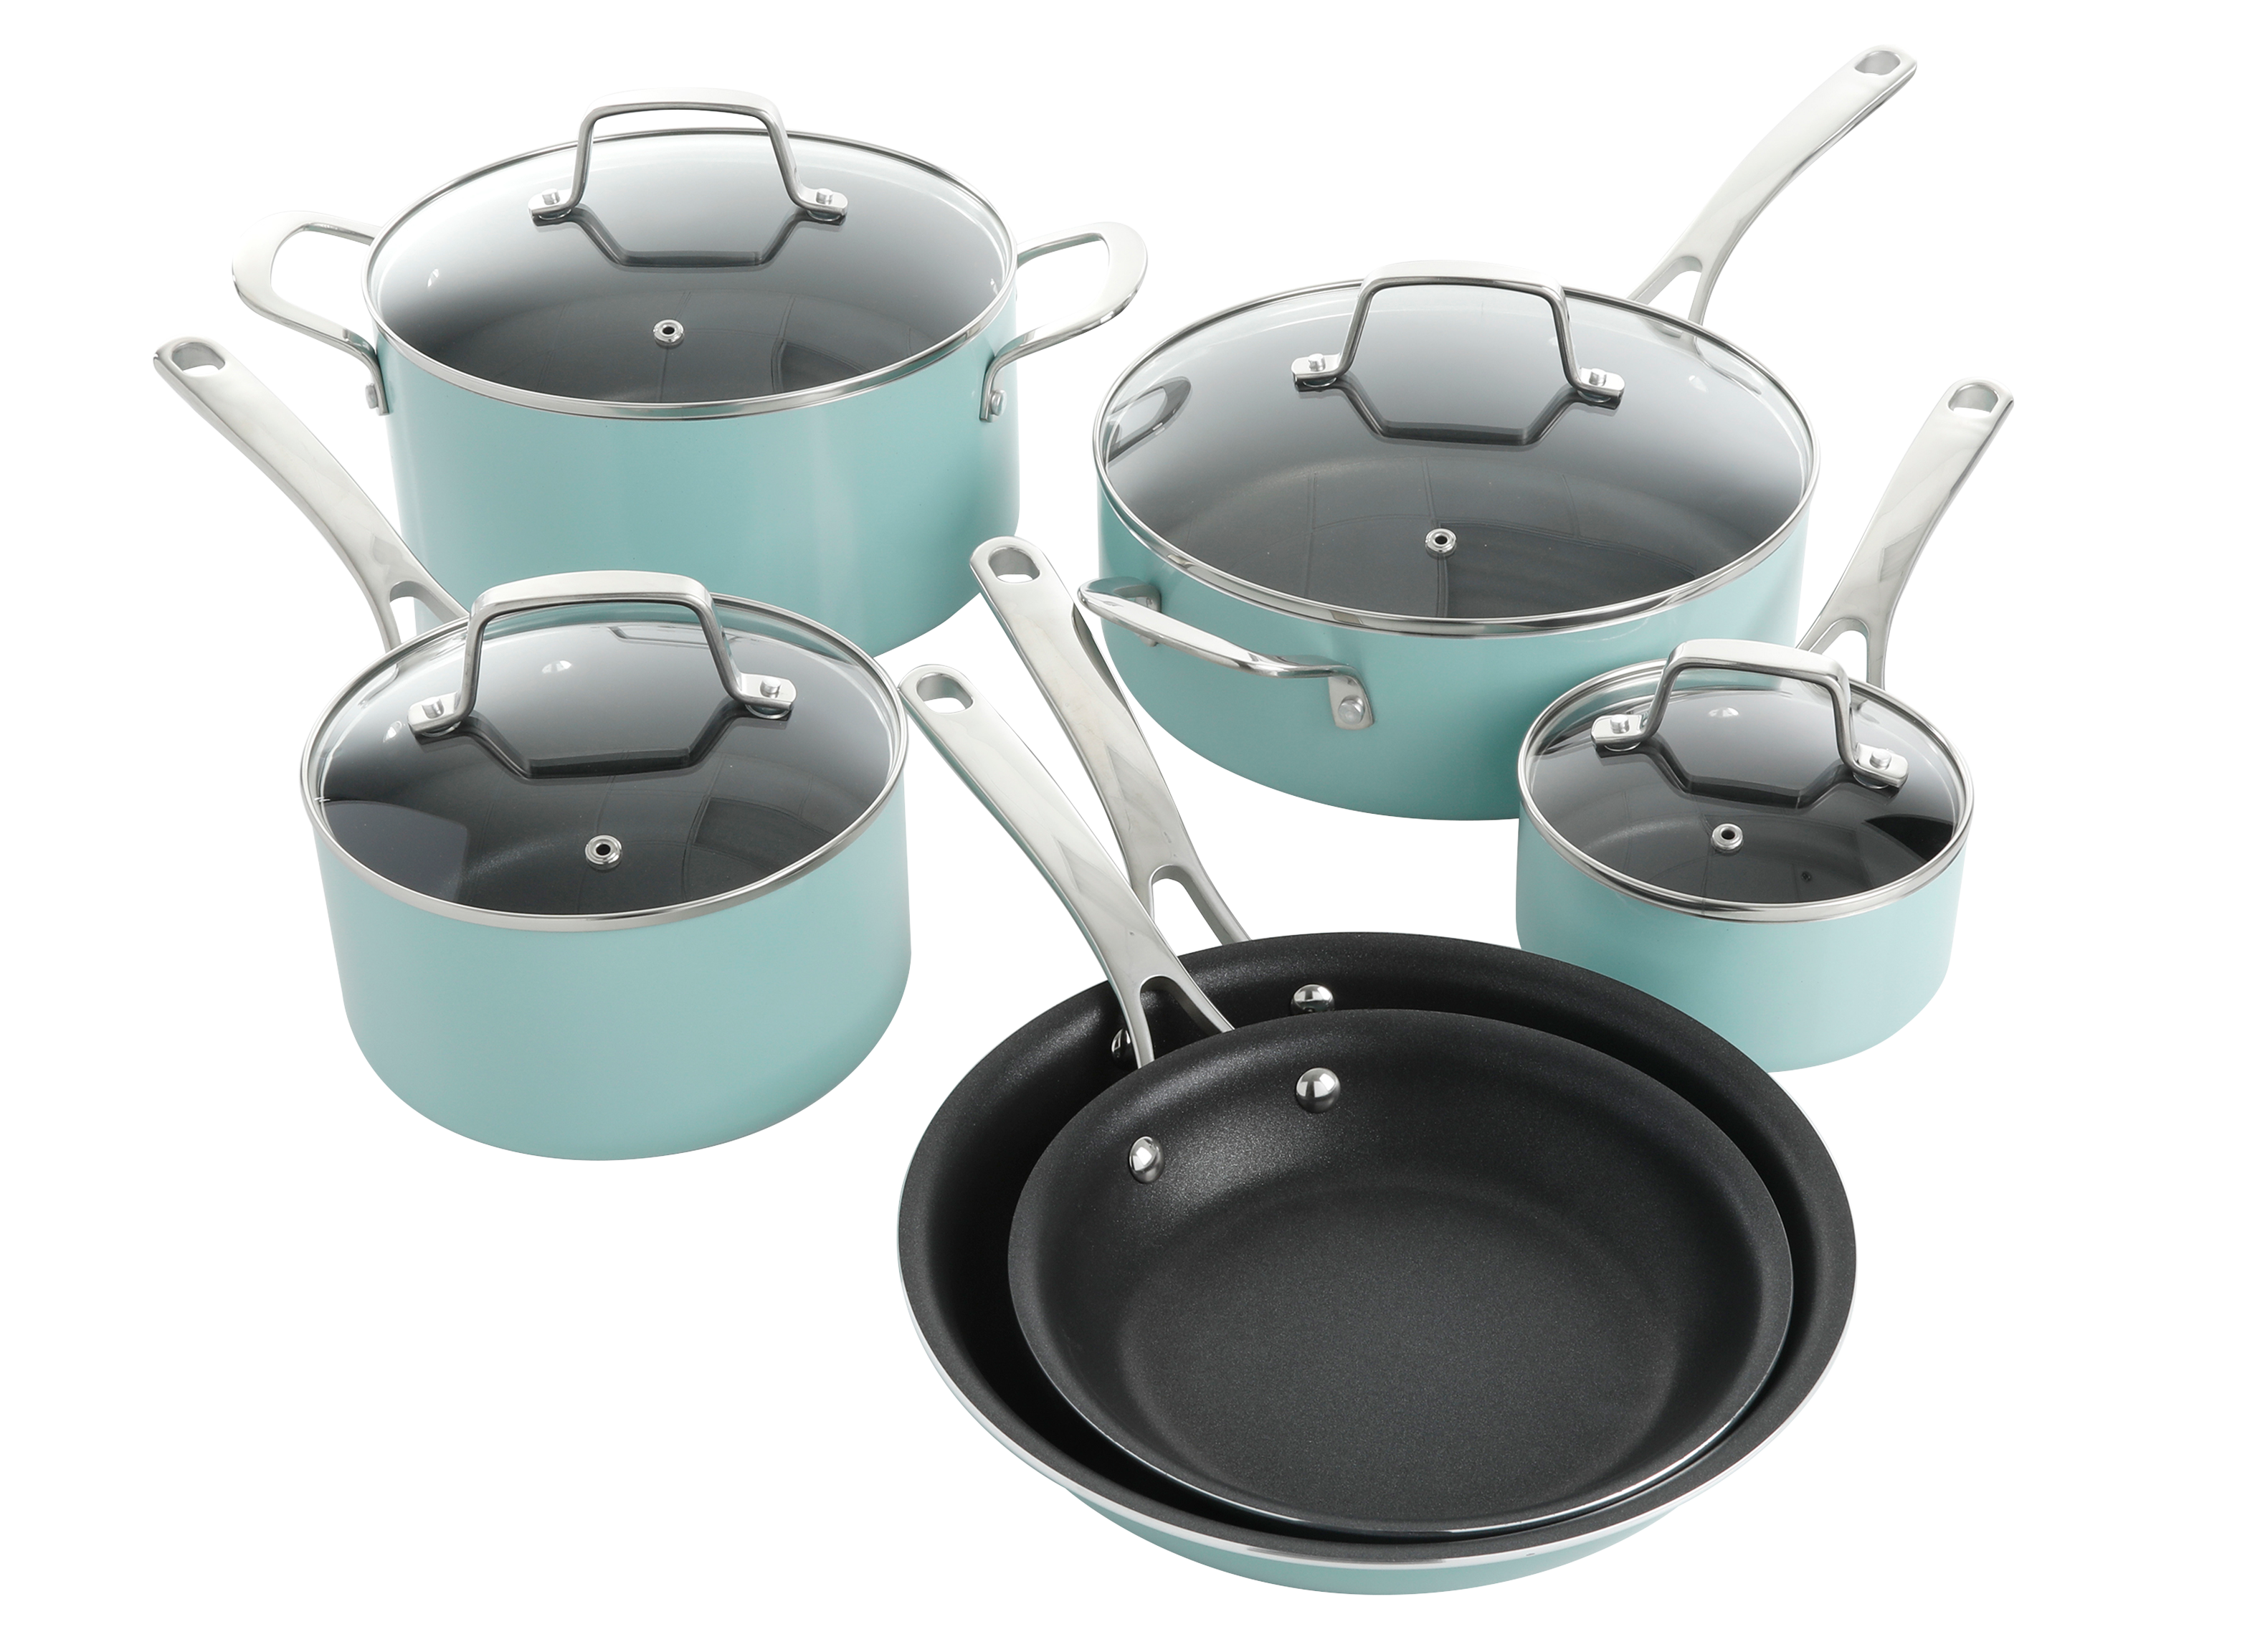 Martha Stewart Lockton Premium Nonstick Cookware Review - Consumer